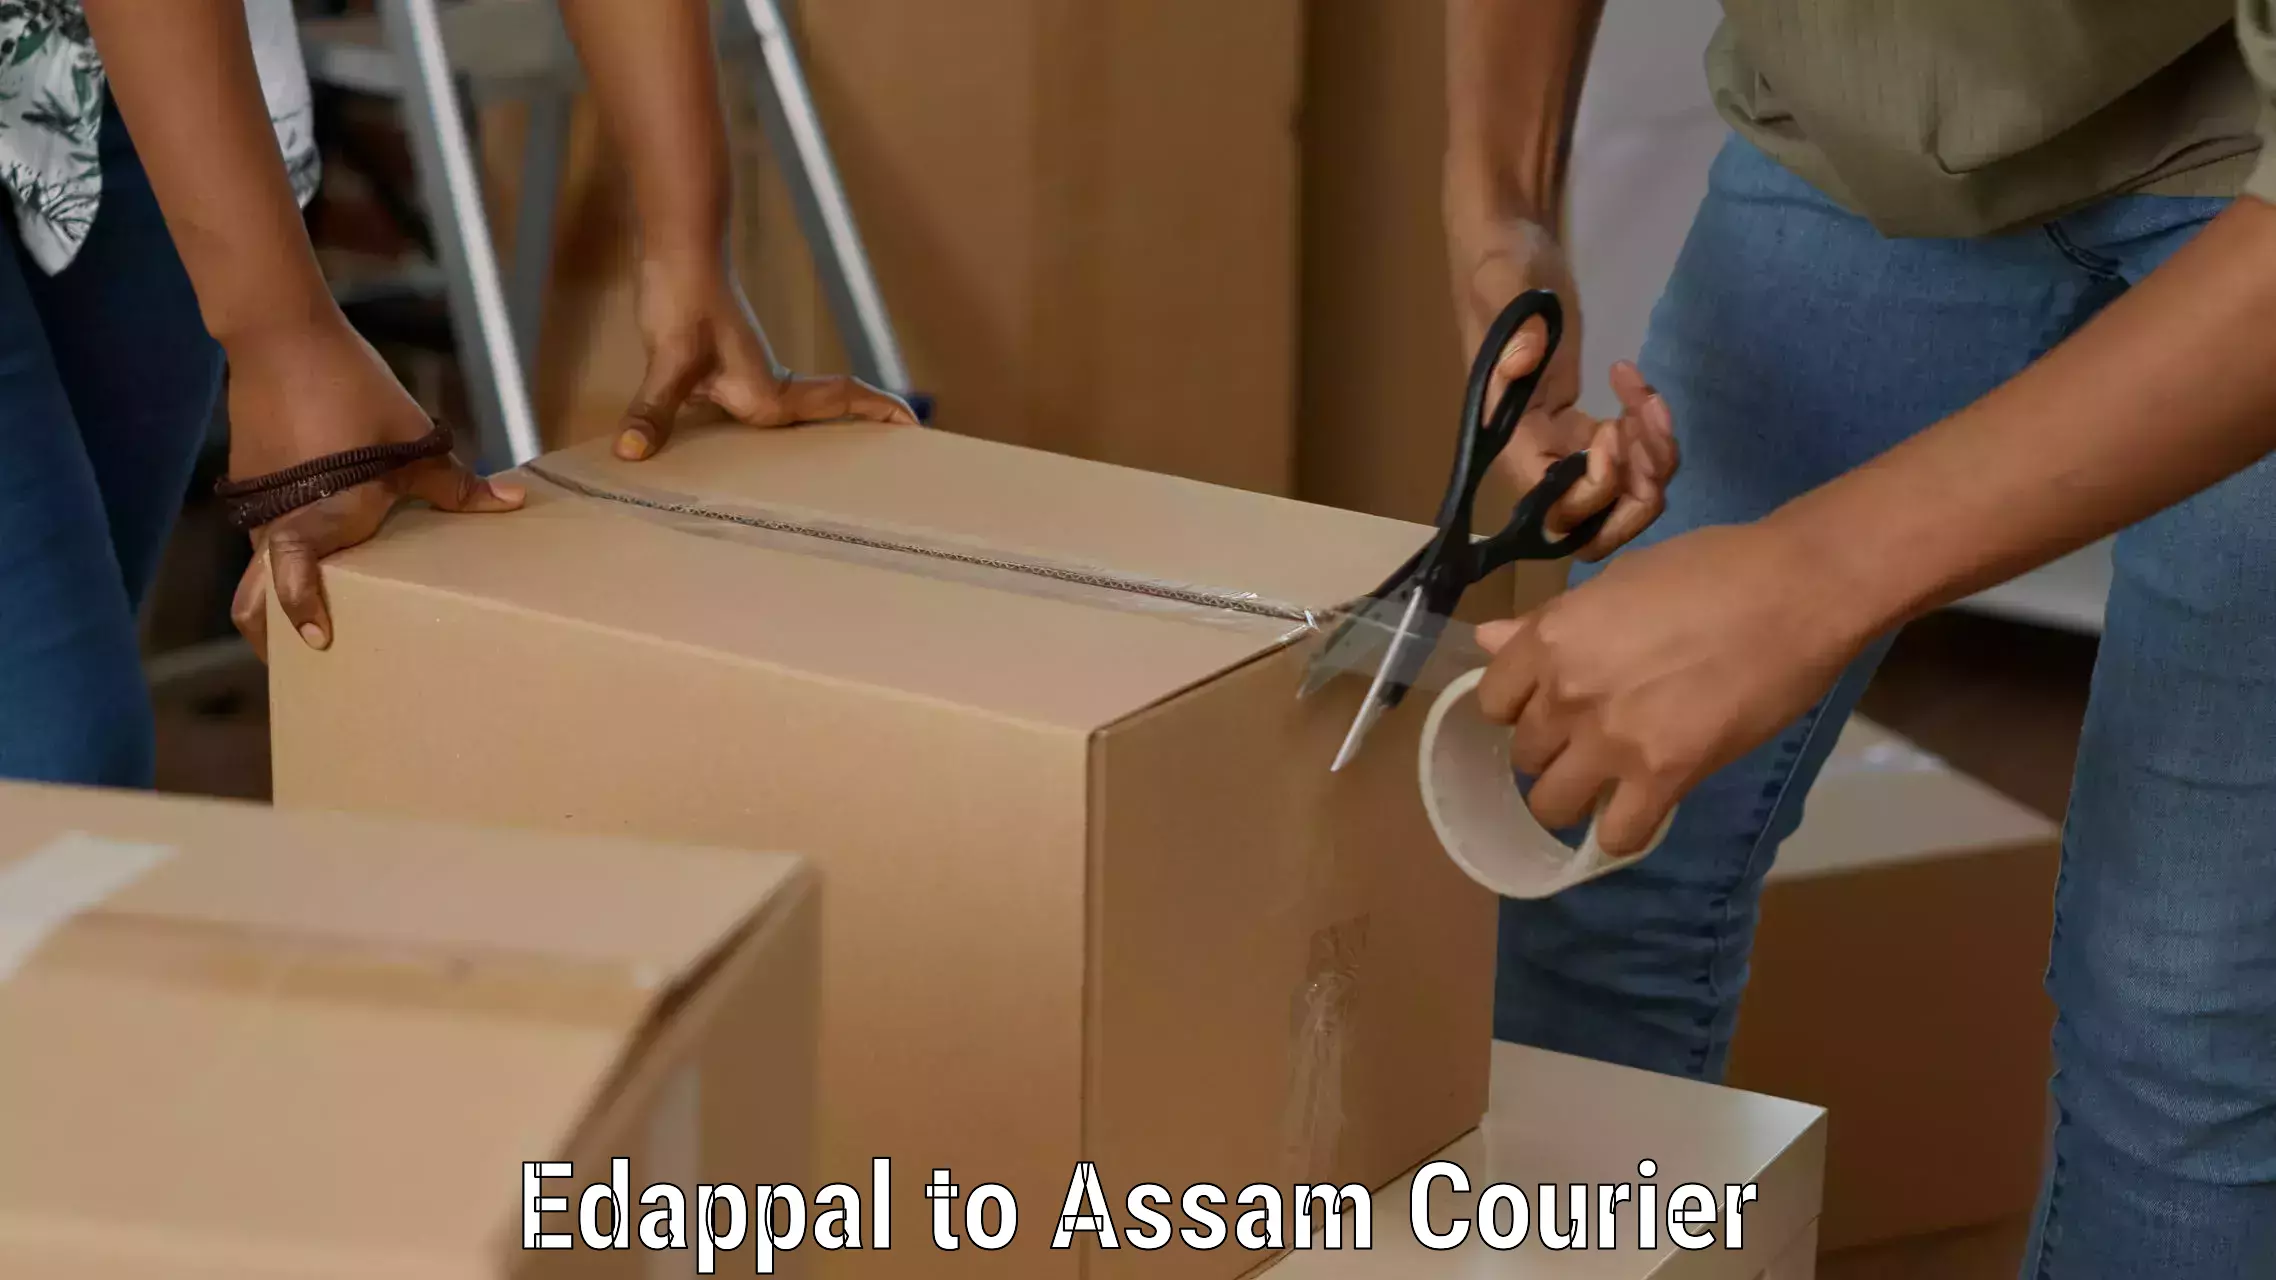 High-capacity shipping options Edappal to Mayang